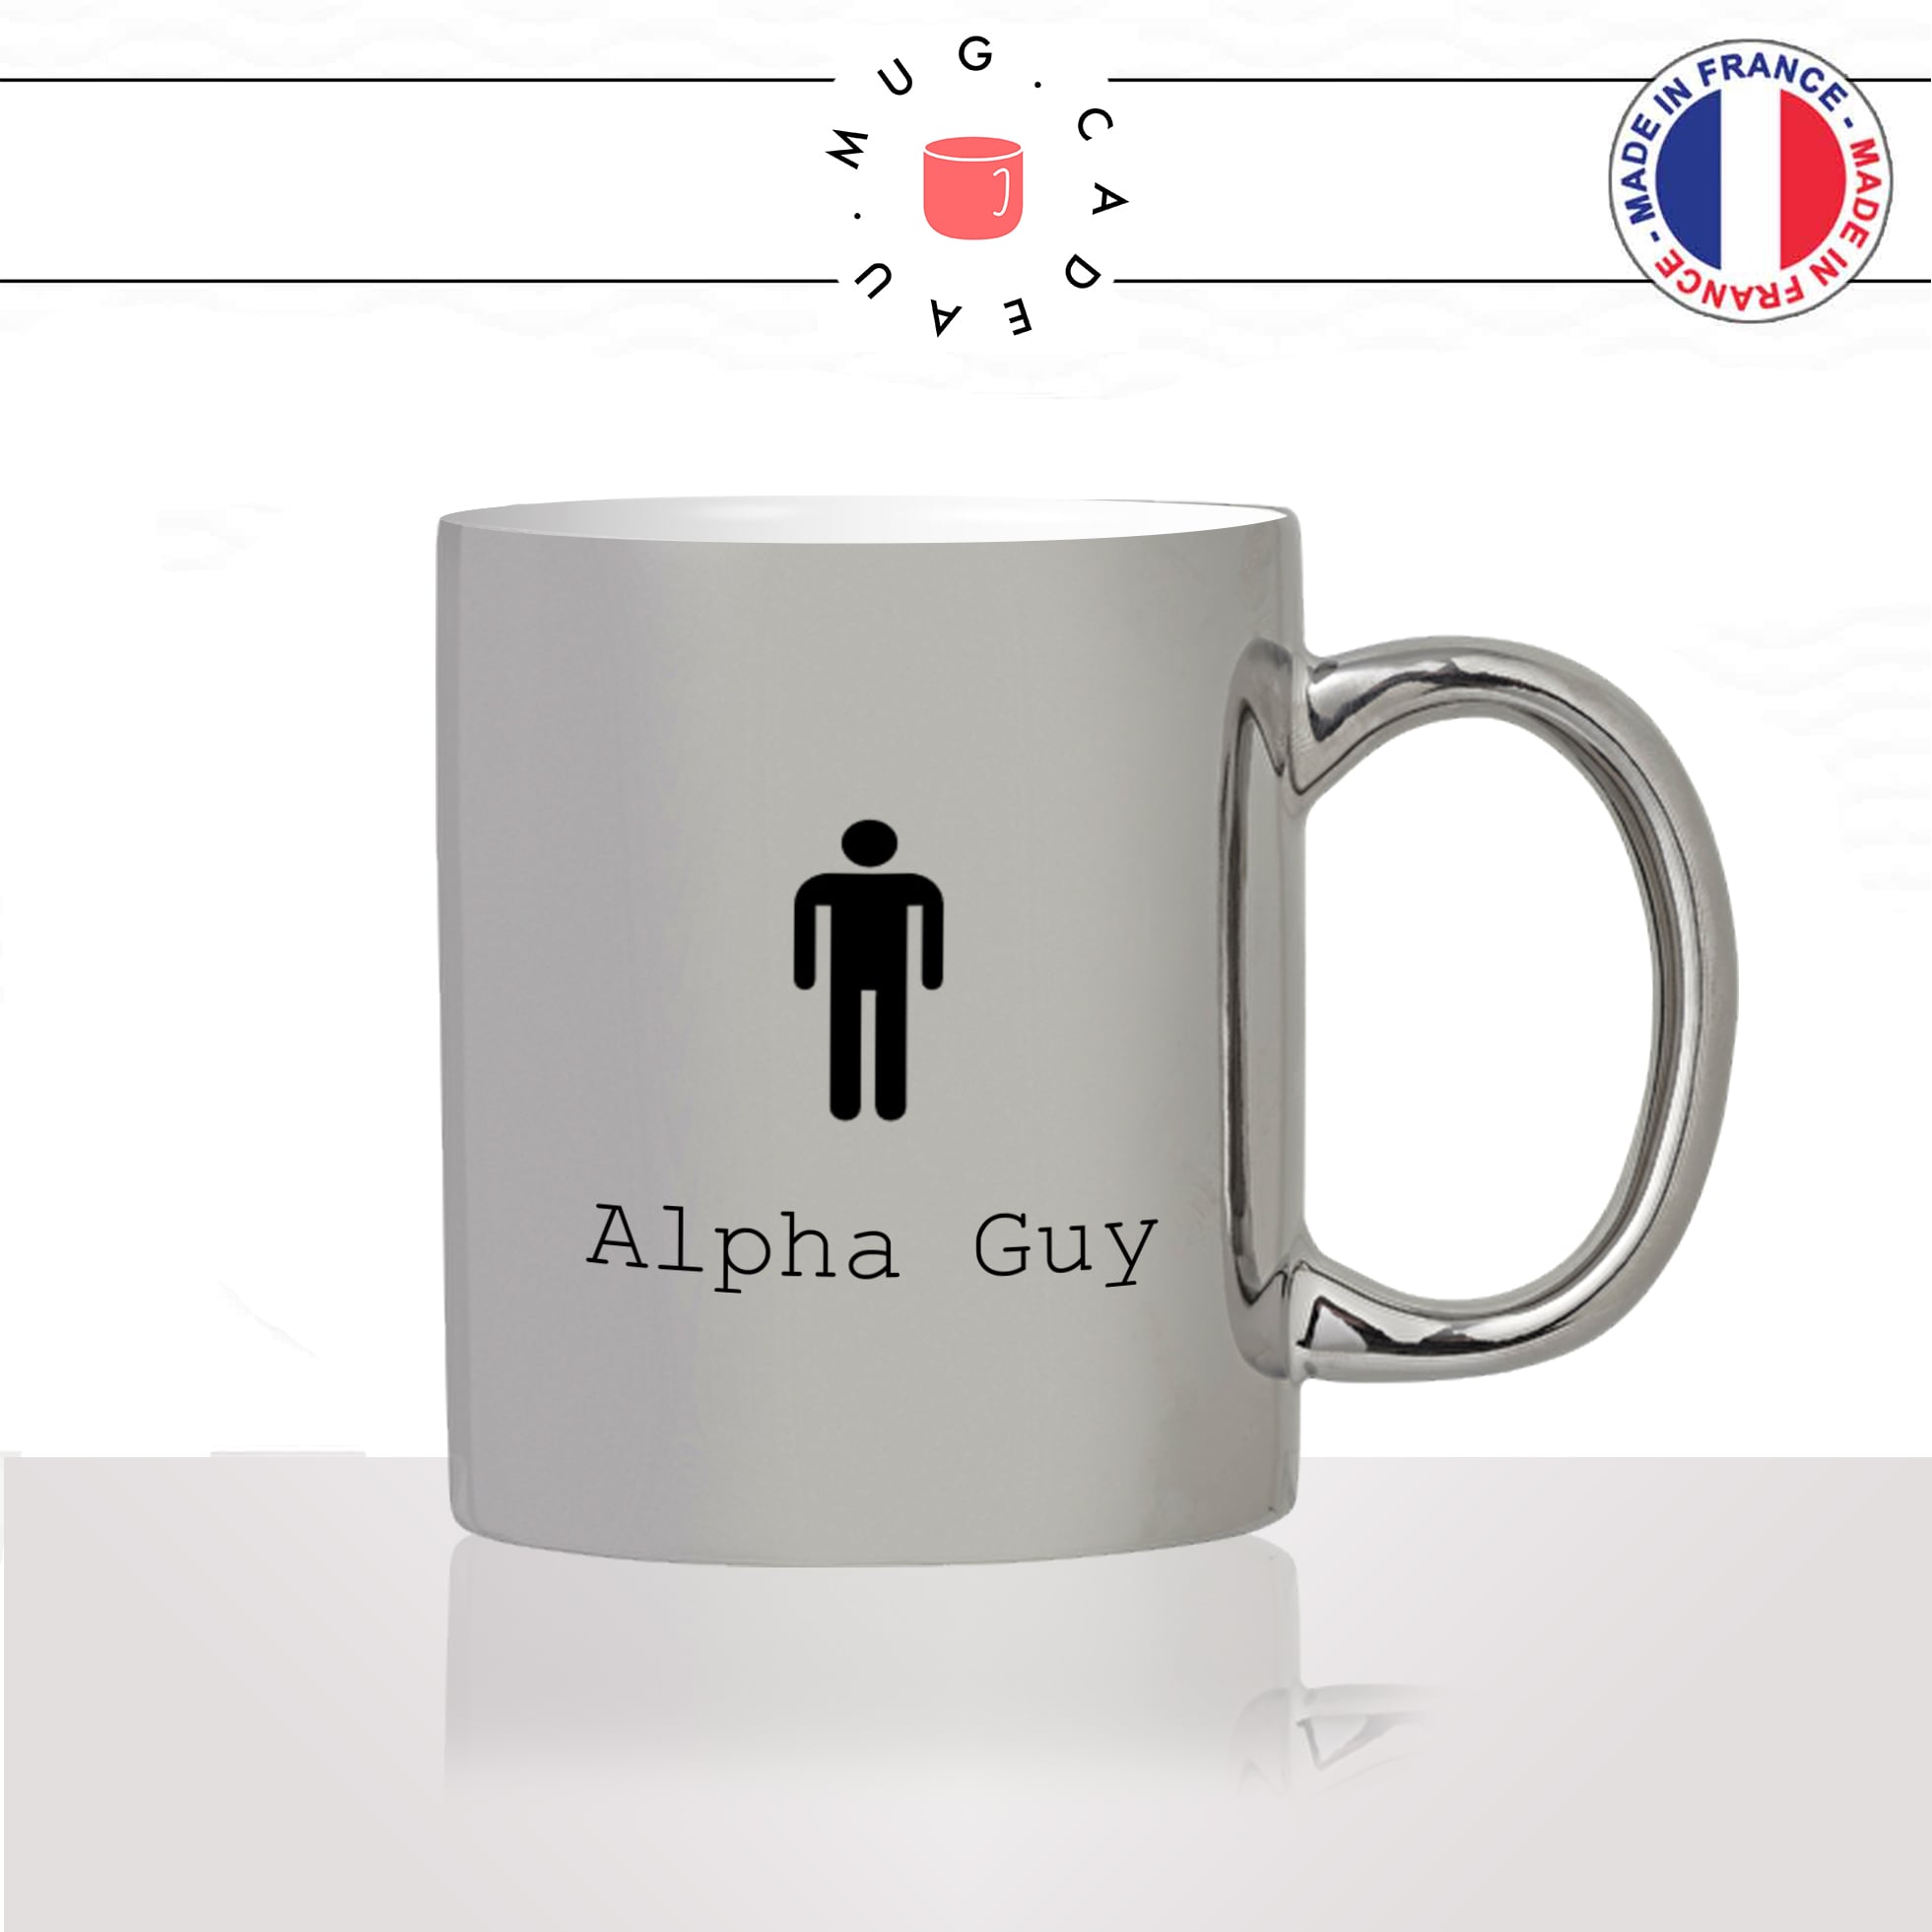 mug-tasse-argent-argenté-silver-alpha-guy-homme-fitness-musculation-sport-collegue-motivation-humour-idée-cadeau-fun-cool-café-thé-original2-min